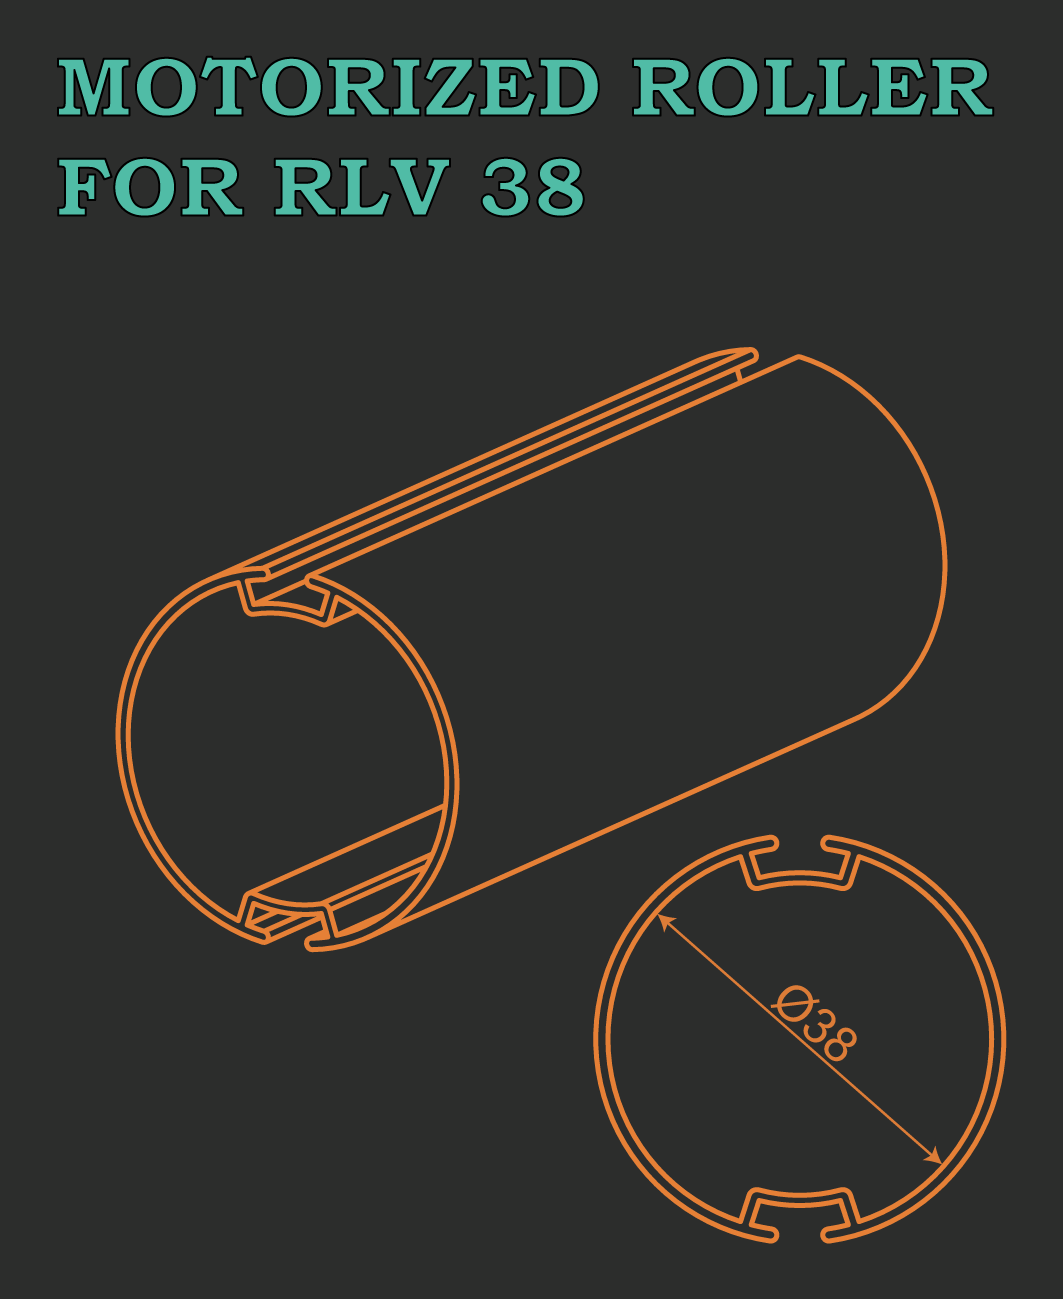 MOTORIZED ROLLER FOR RLV 38